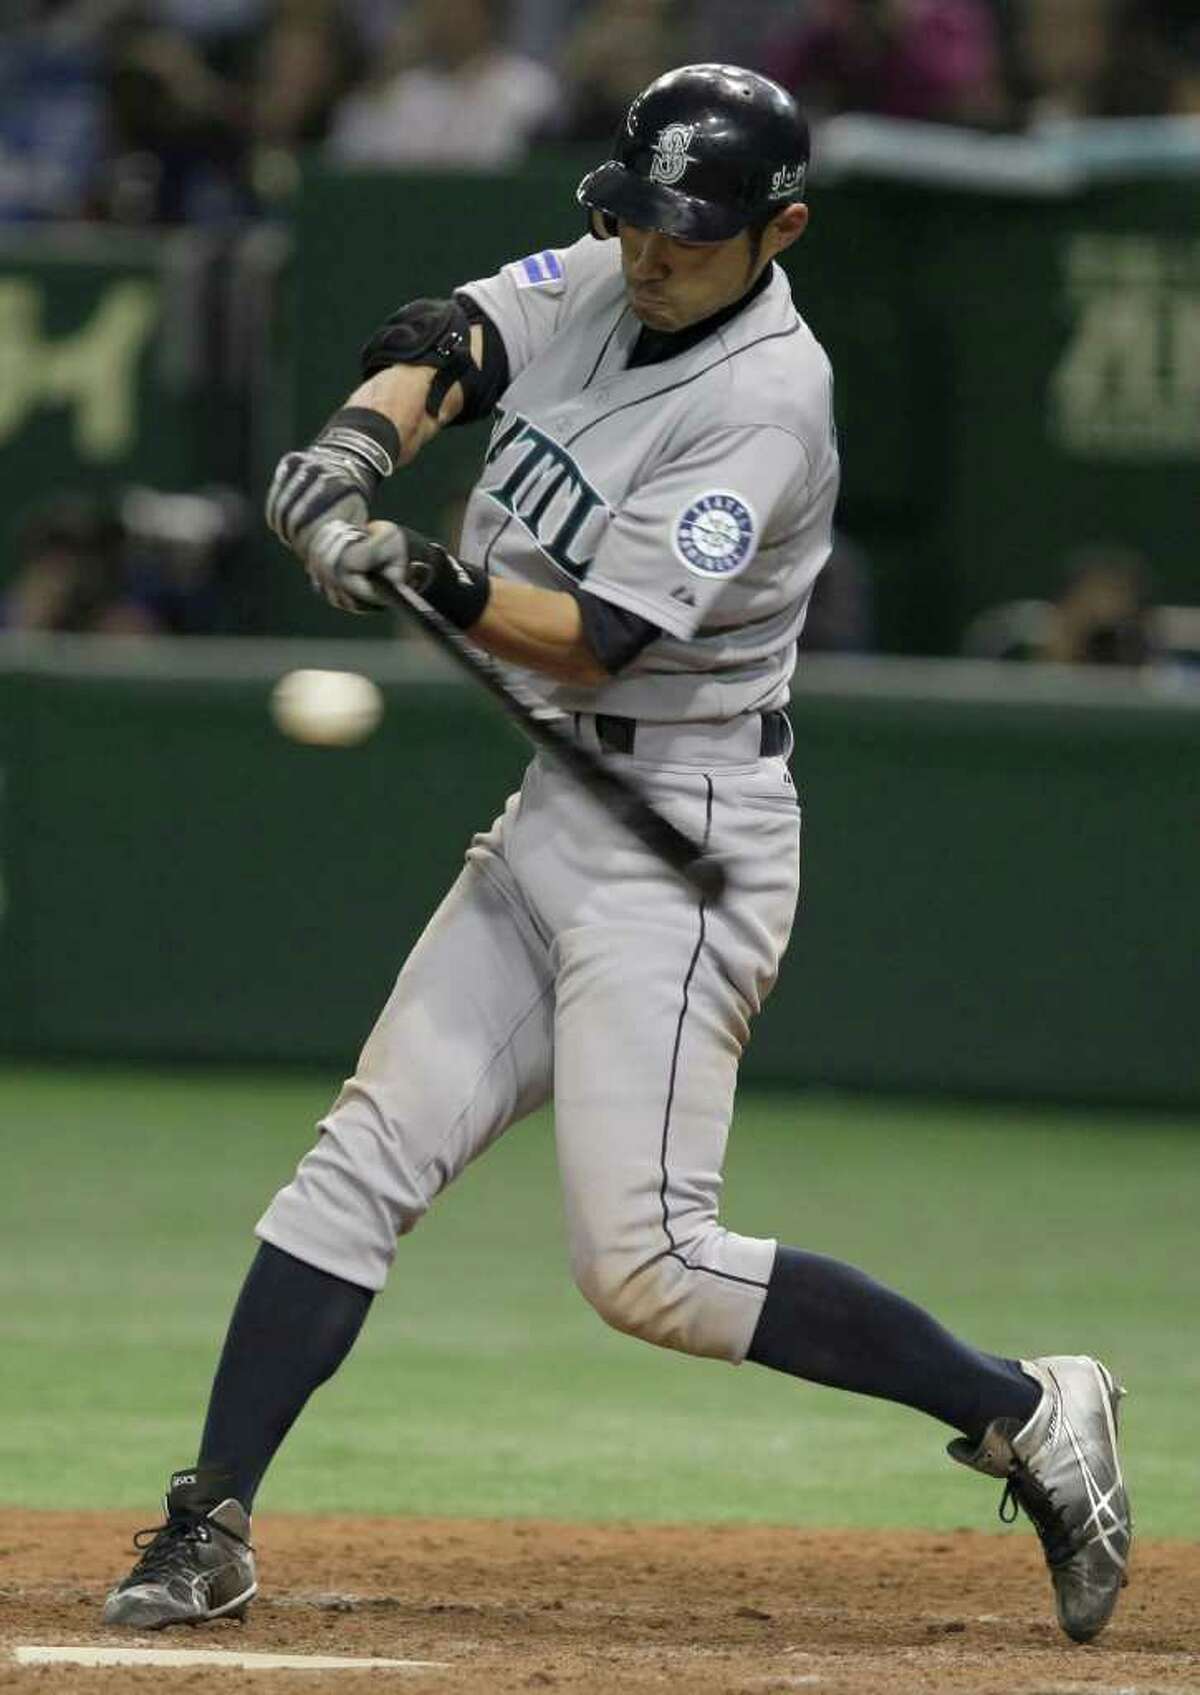 Ichiro Suzuki of the Seattle Mariners, part of the American League